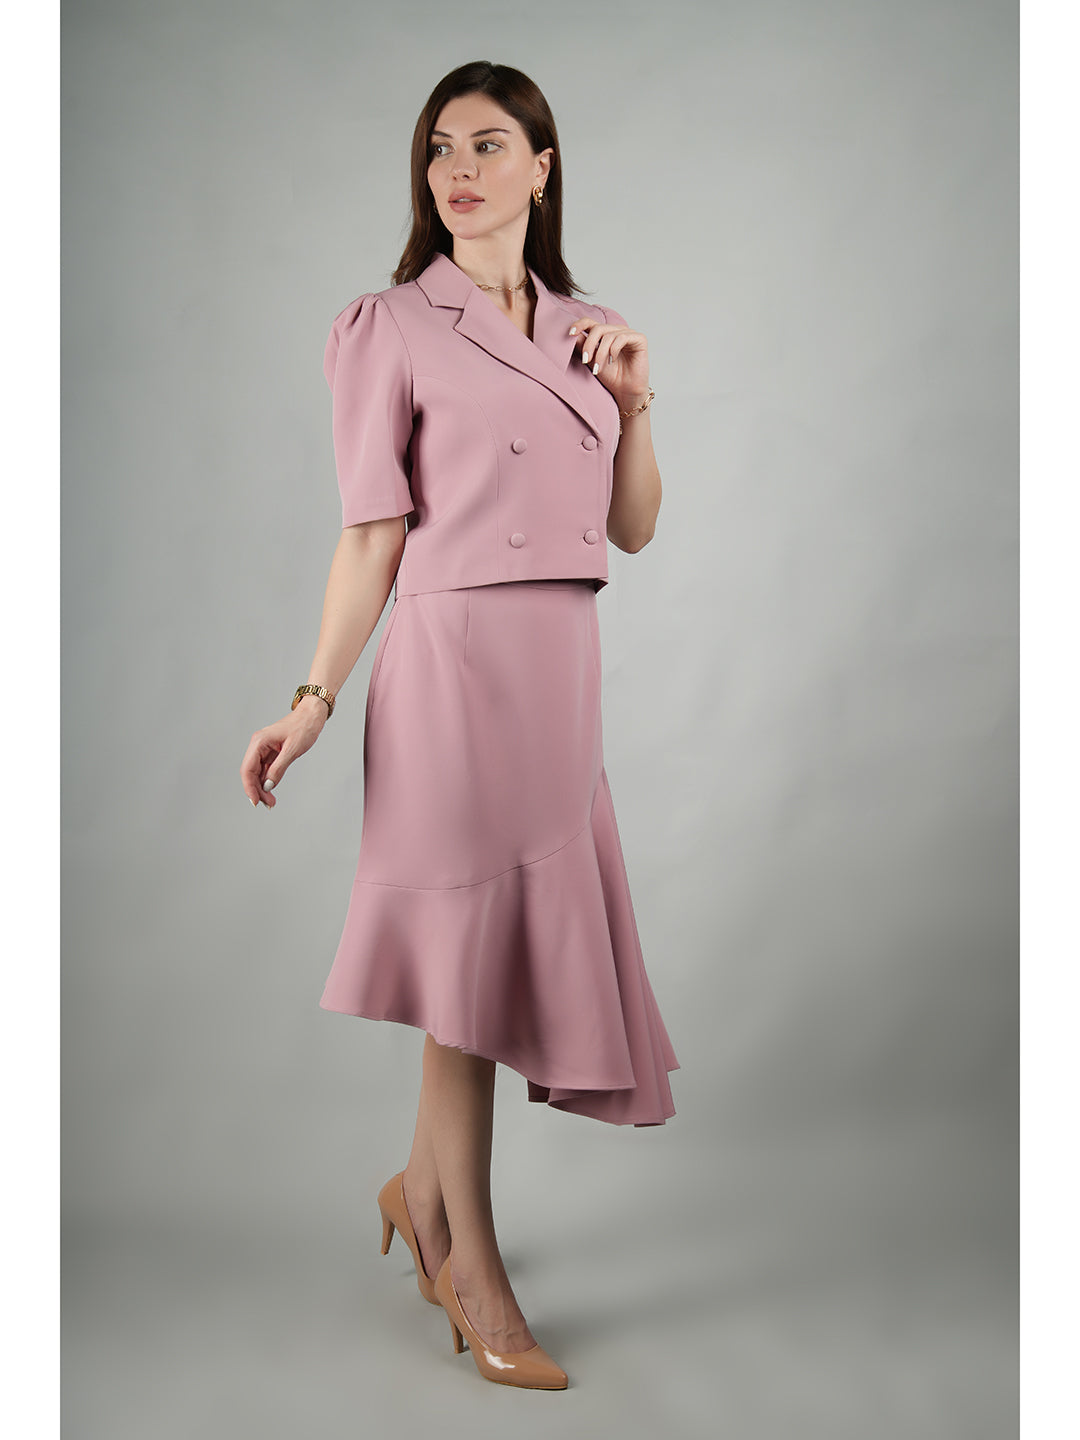 Exude Sunbeam Crop Blazer With Asymmetrical Skirt (Blush Pink)